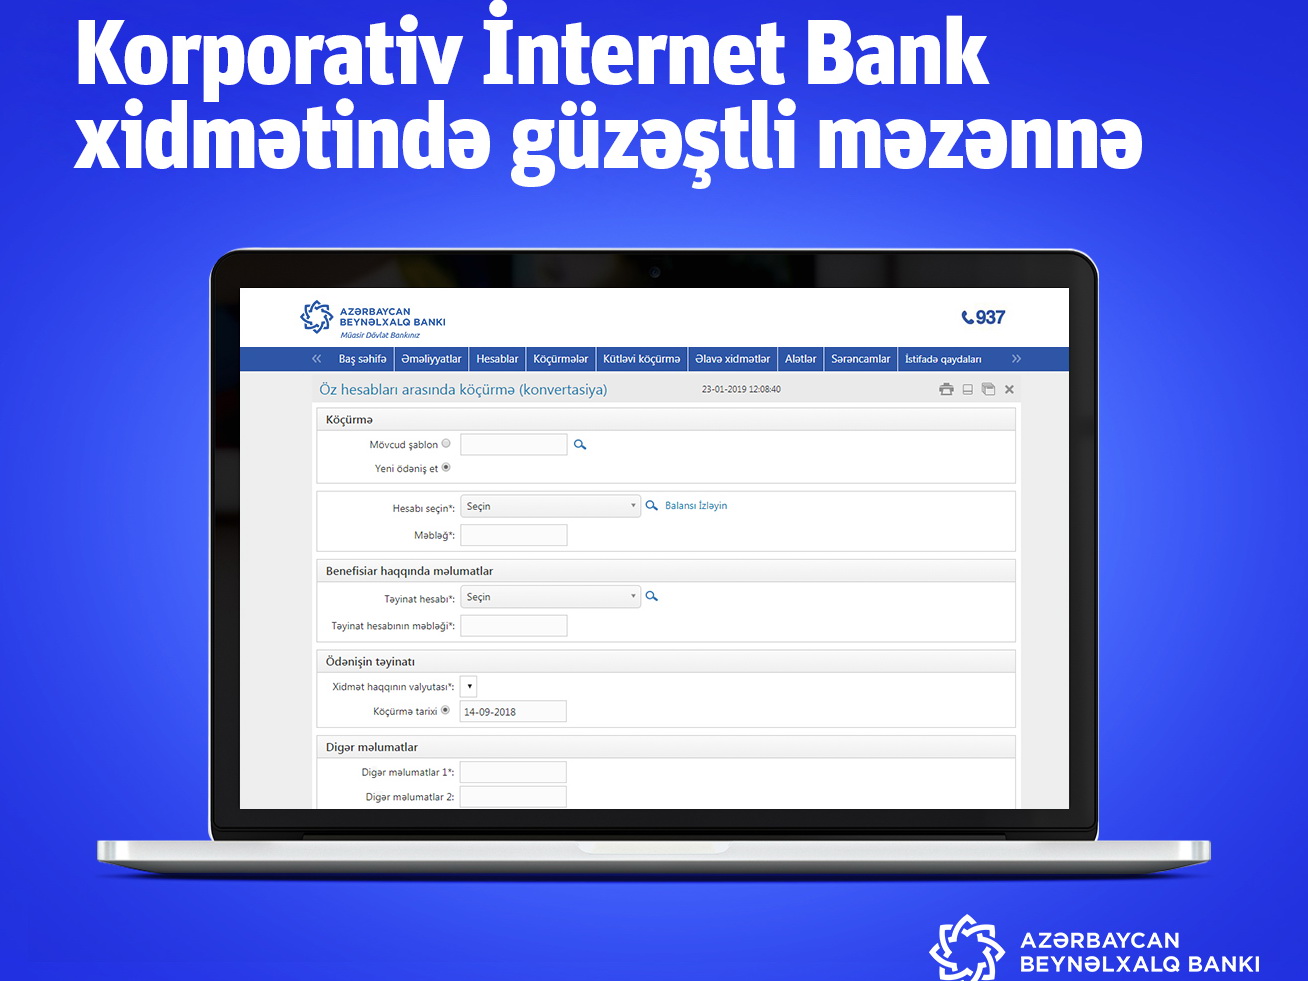 Международный банк Азербайджана представил преимущество в рамках услуги интернет-банкинга для корпоративных клиентов